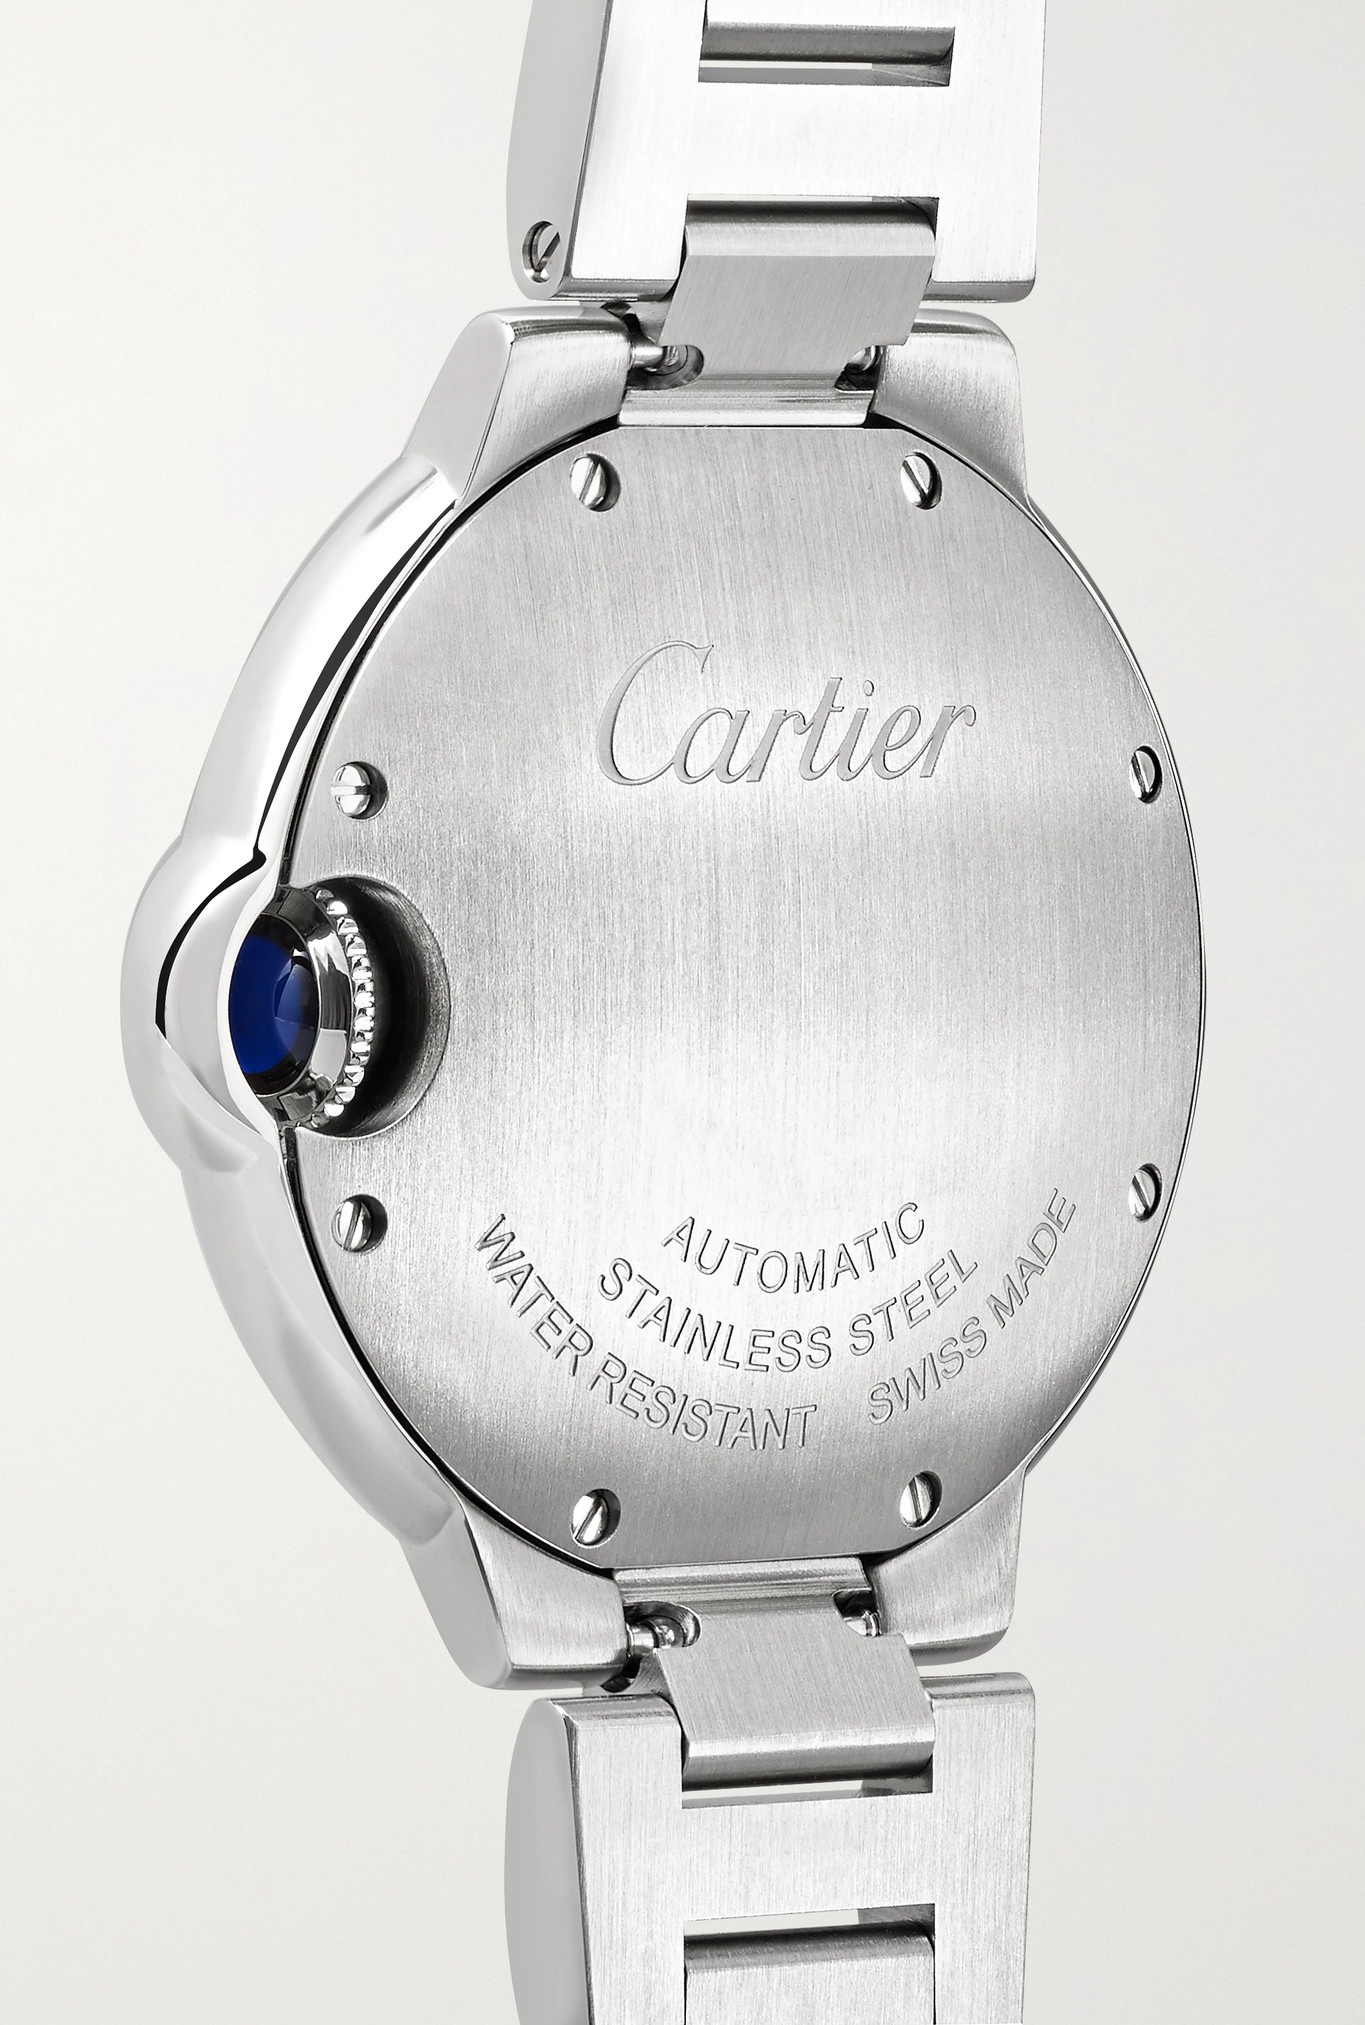 Ballon Bleu de Cartier Automatic 33mm stainless steel and diamond watch - 4